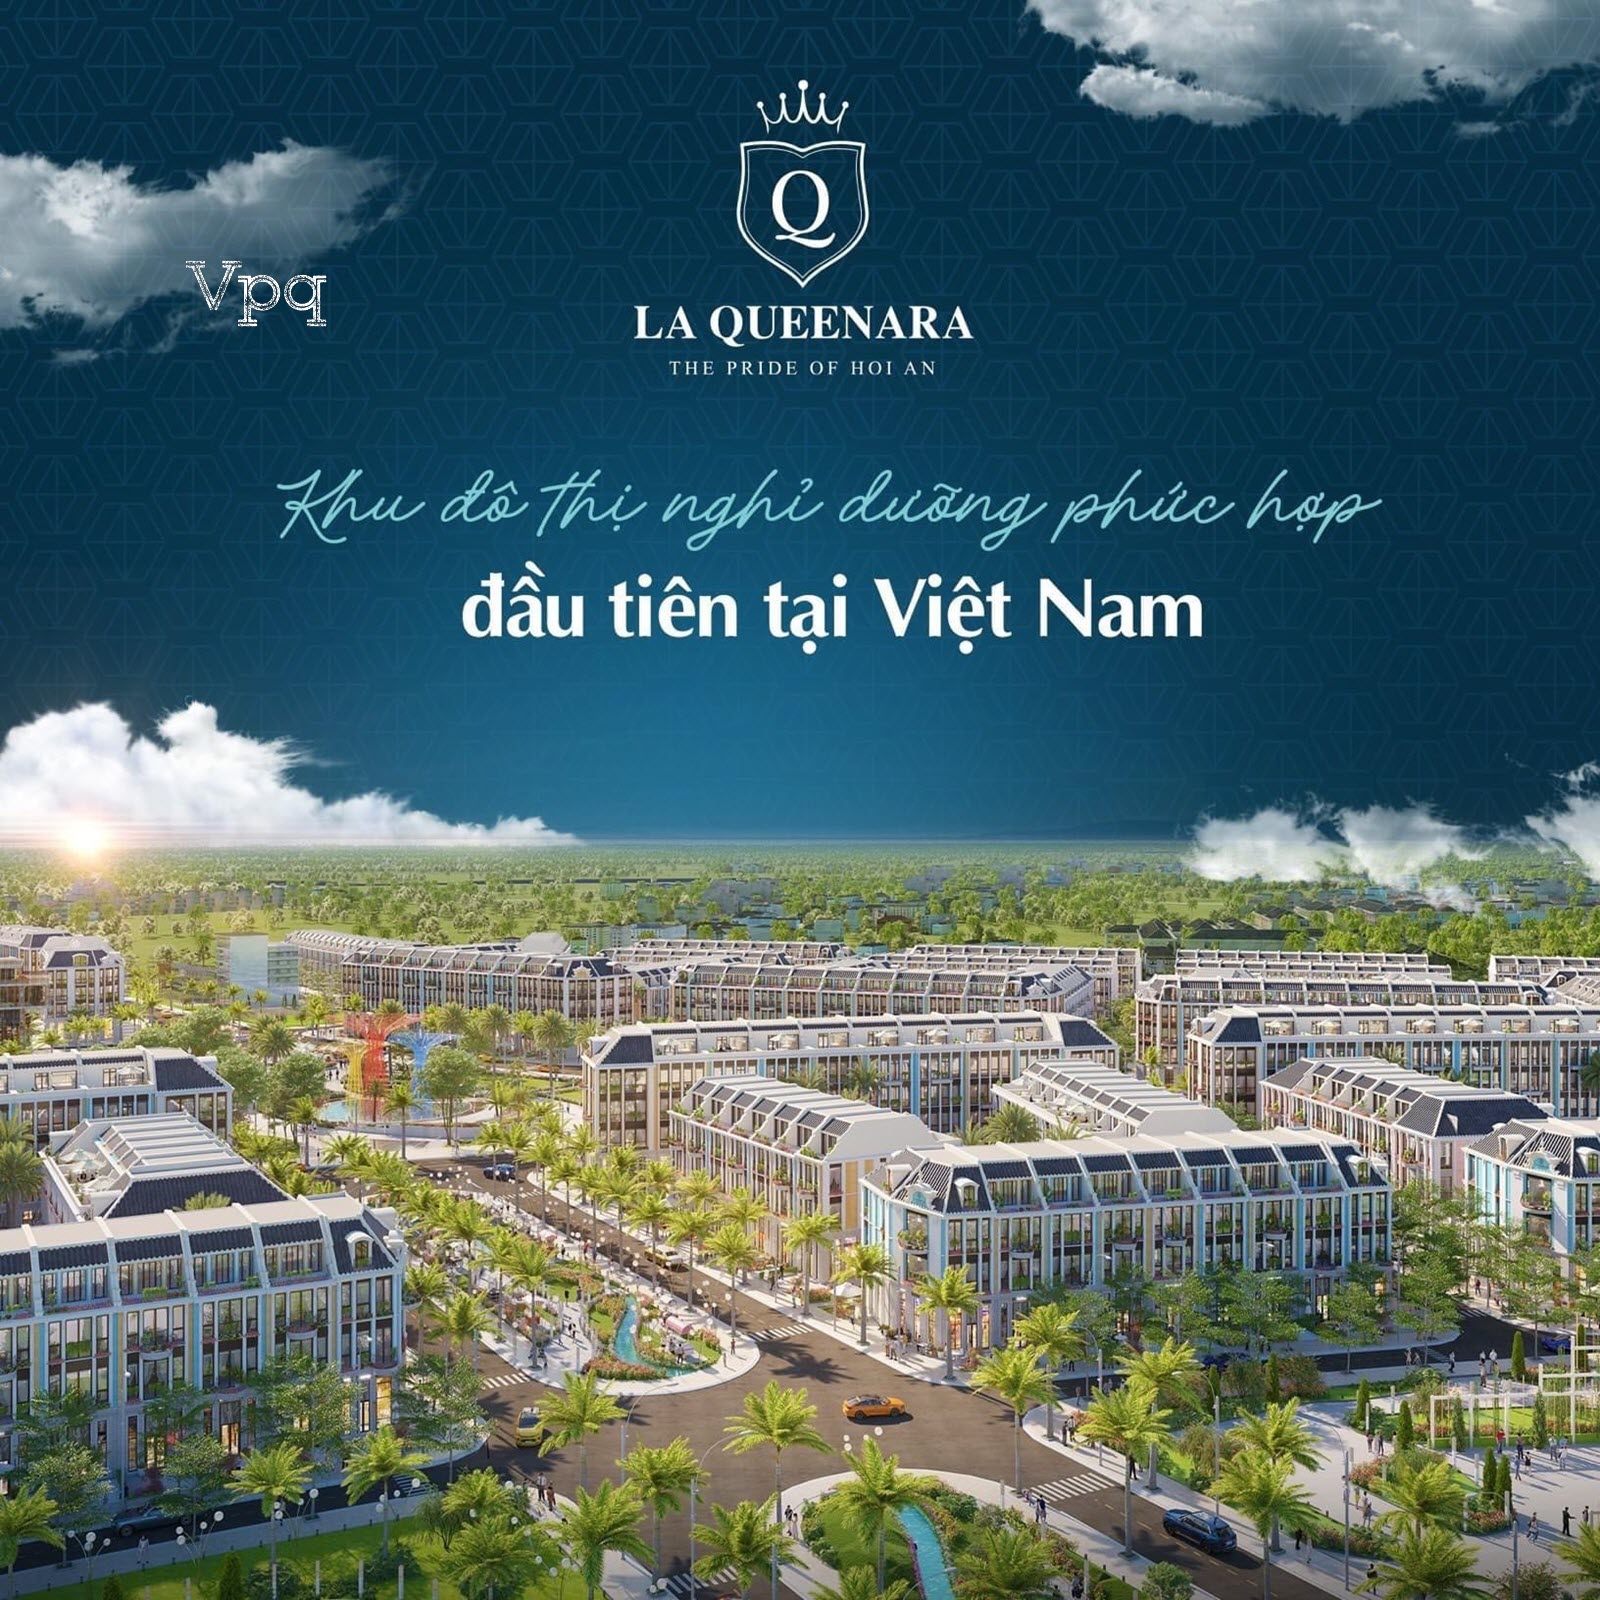 Khu nghỉ dưỡng phức hợp đầu tiên của Việt Nam